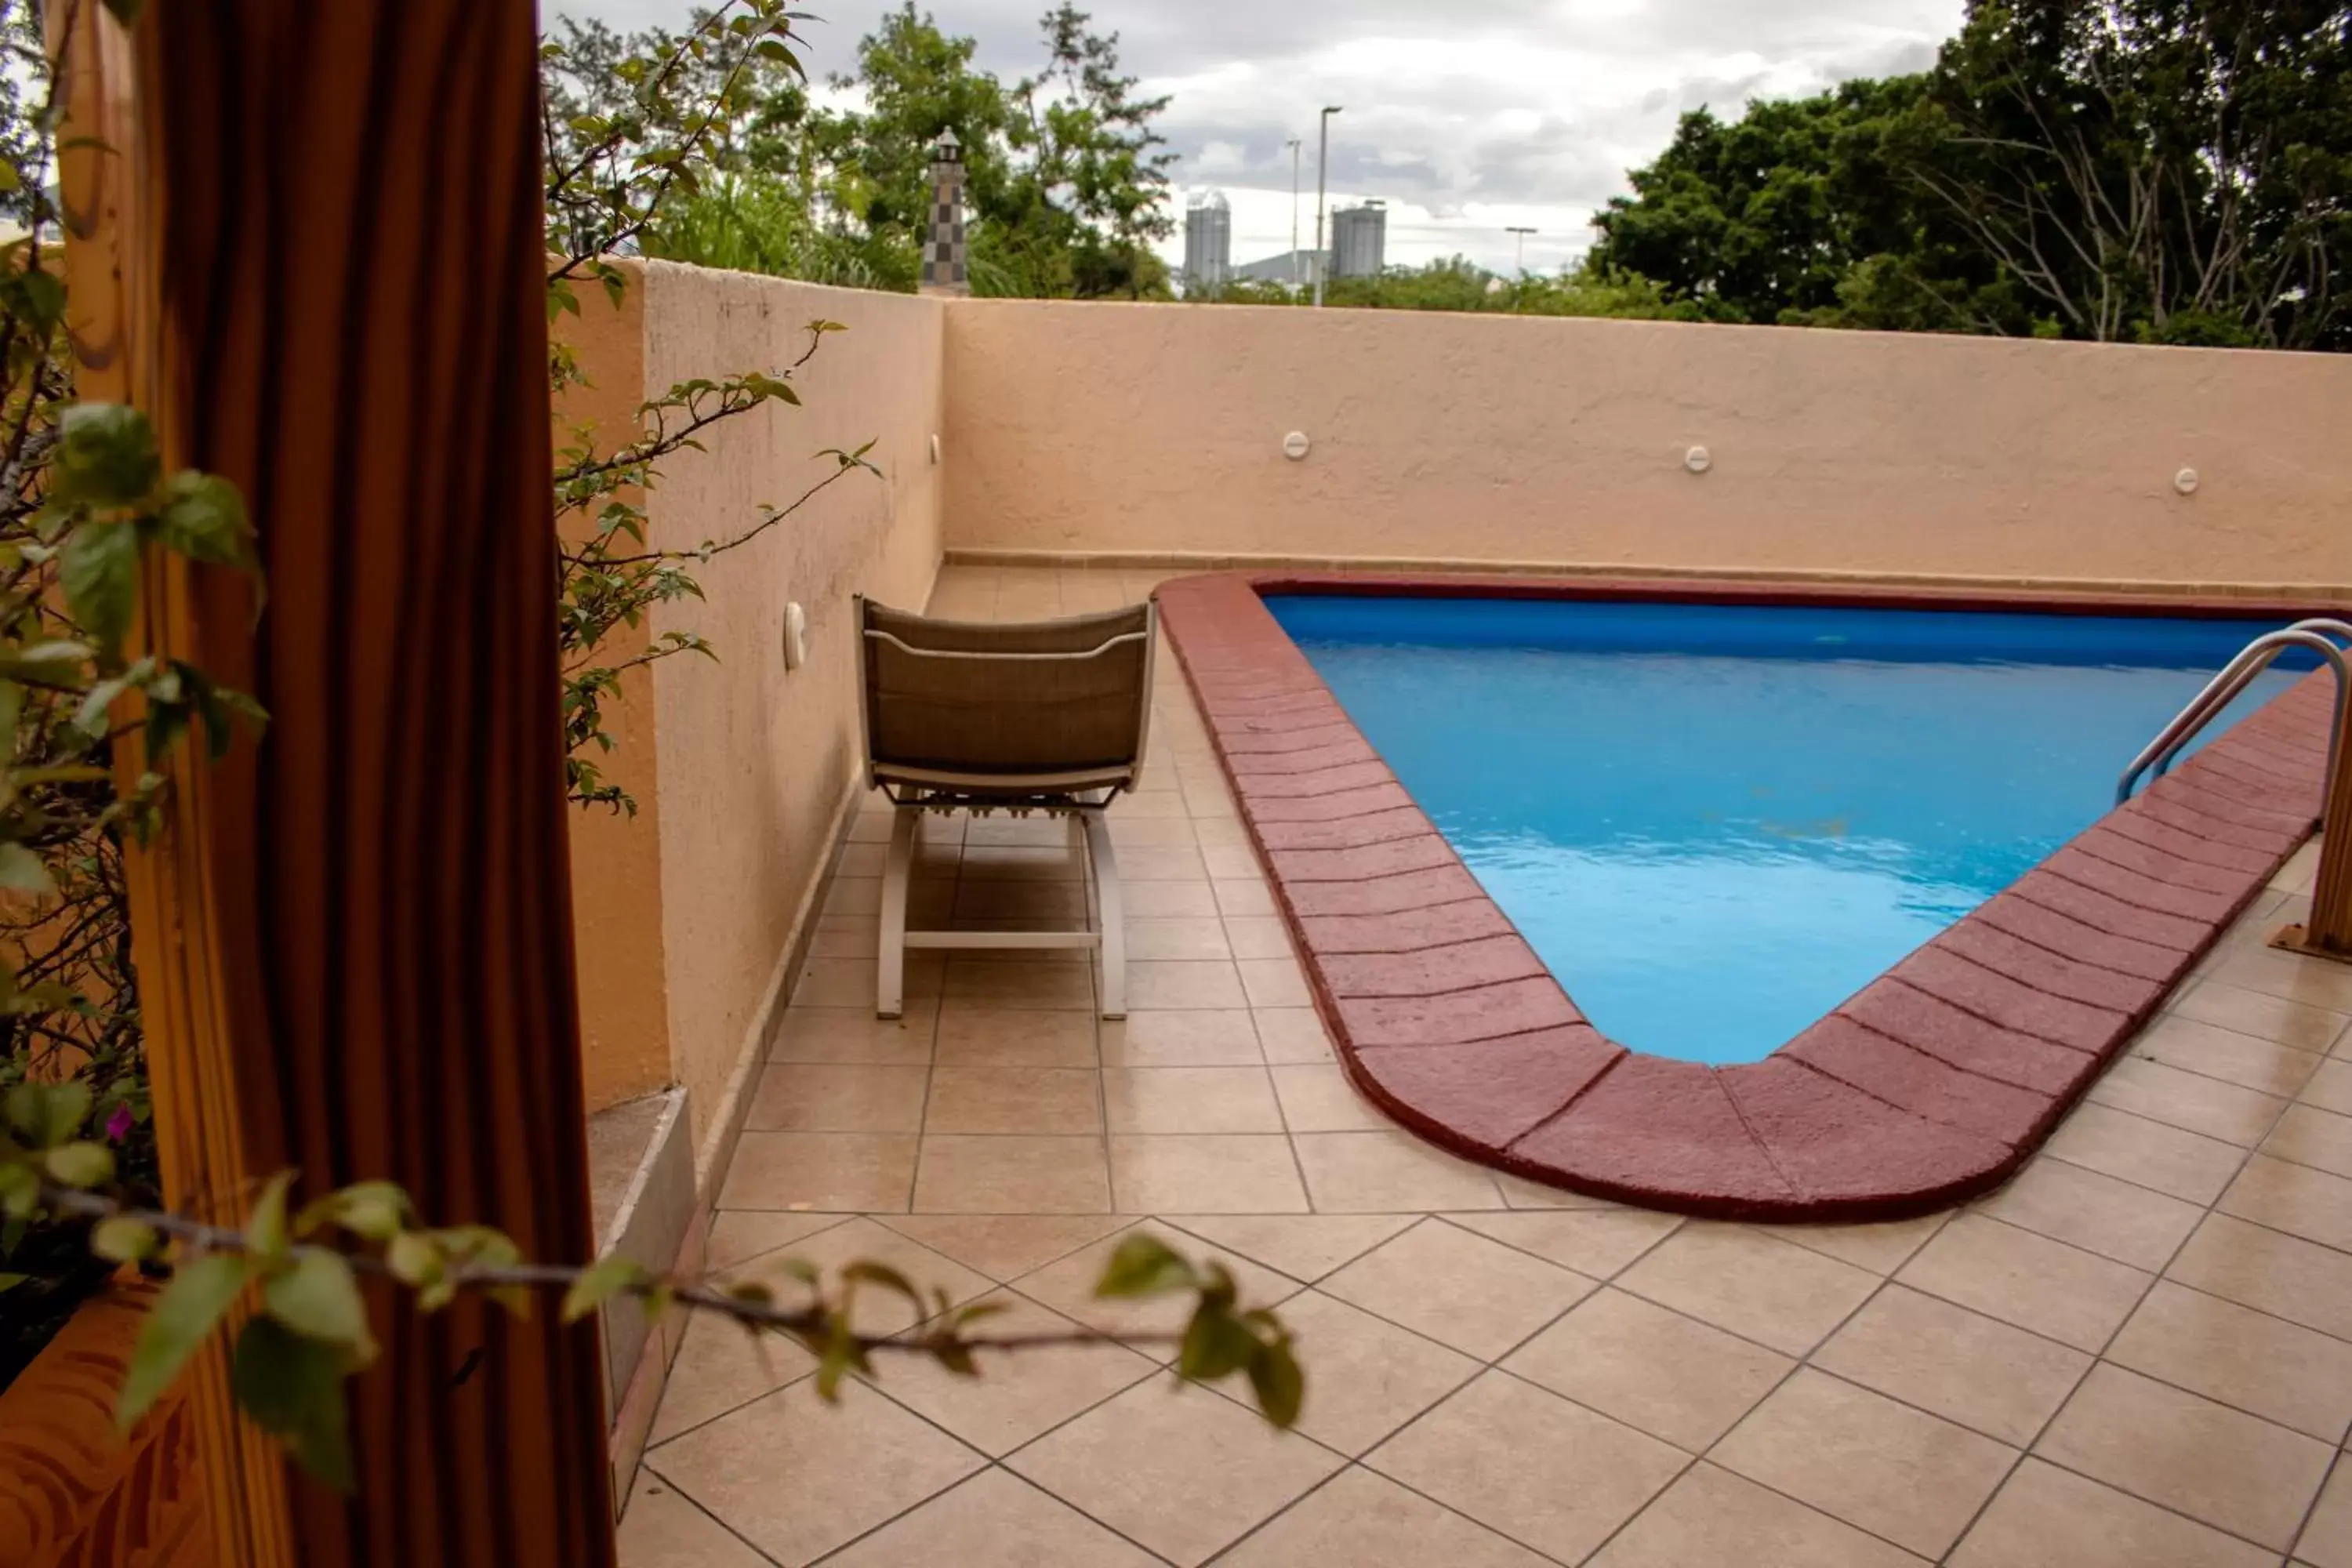 Swimming Pool in Hotel Santa Irene Guadalajara